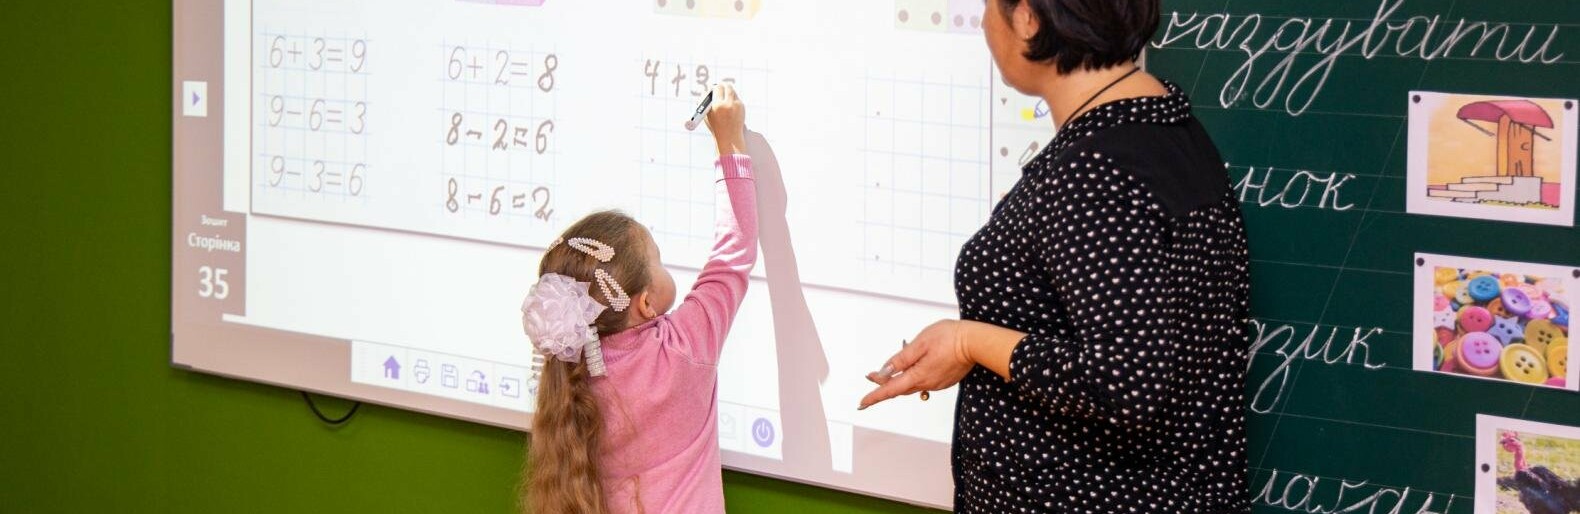 У школах Дніпропетровщини готуються до навчального року офлайн